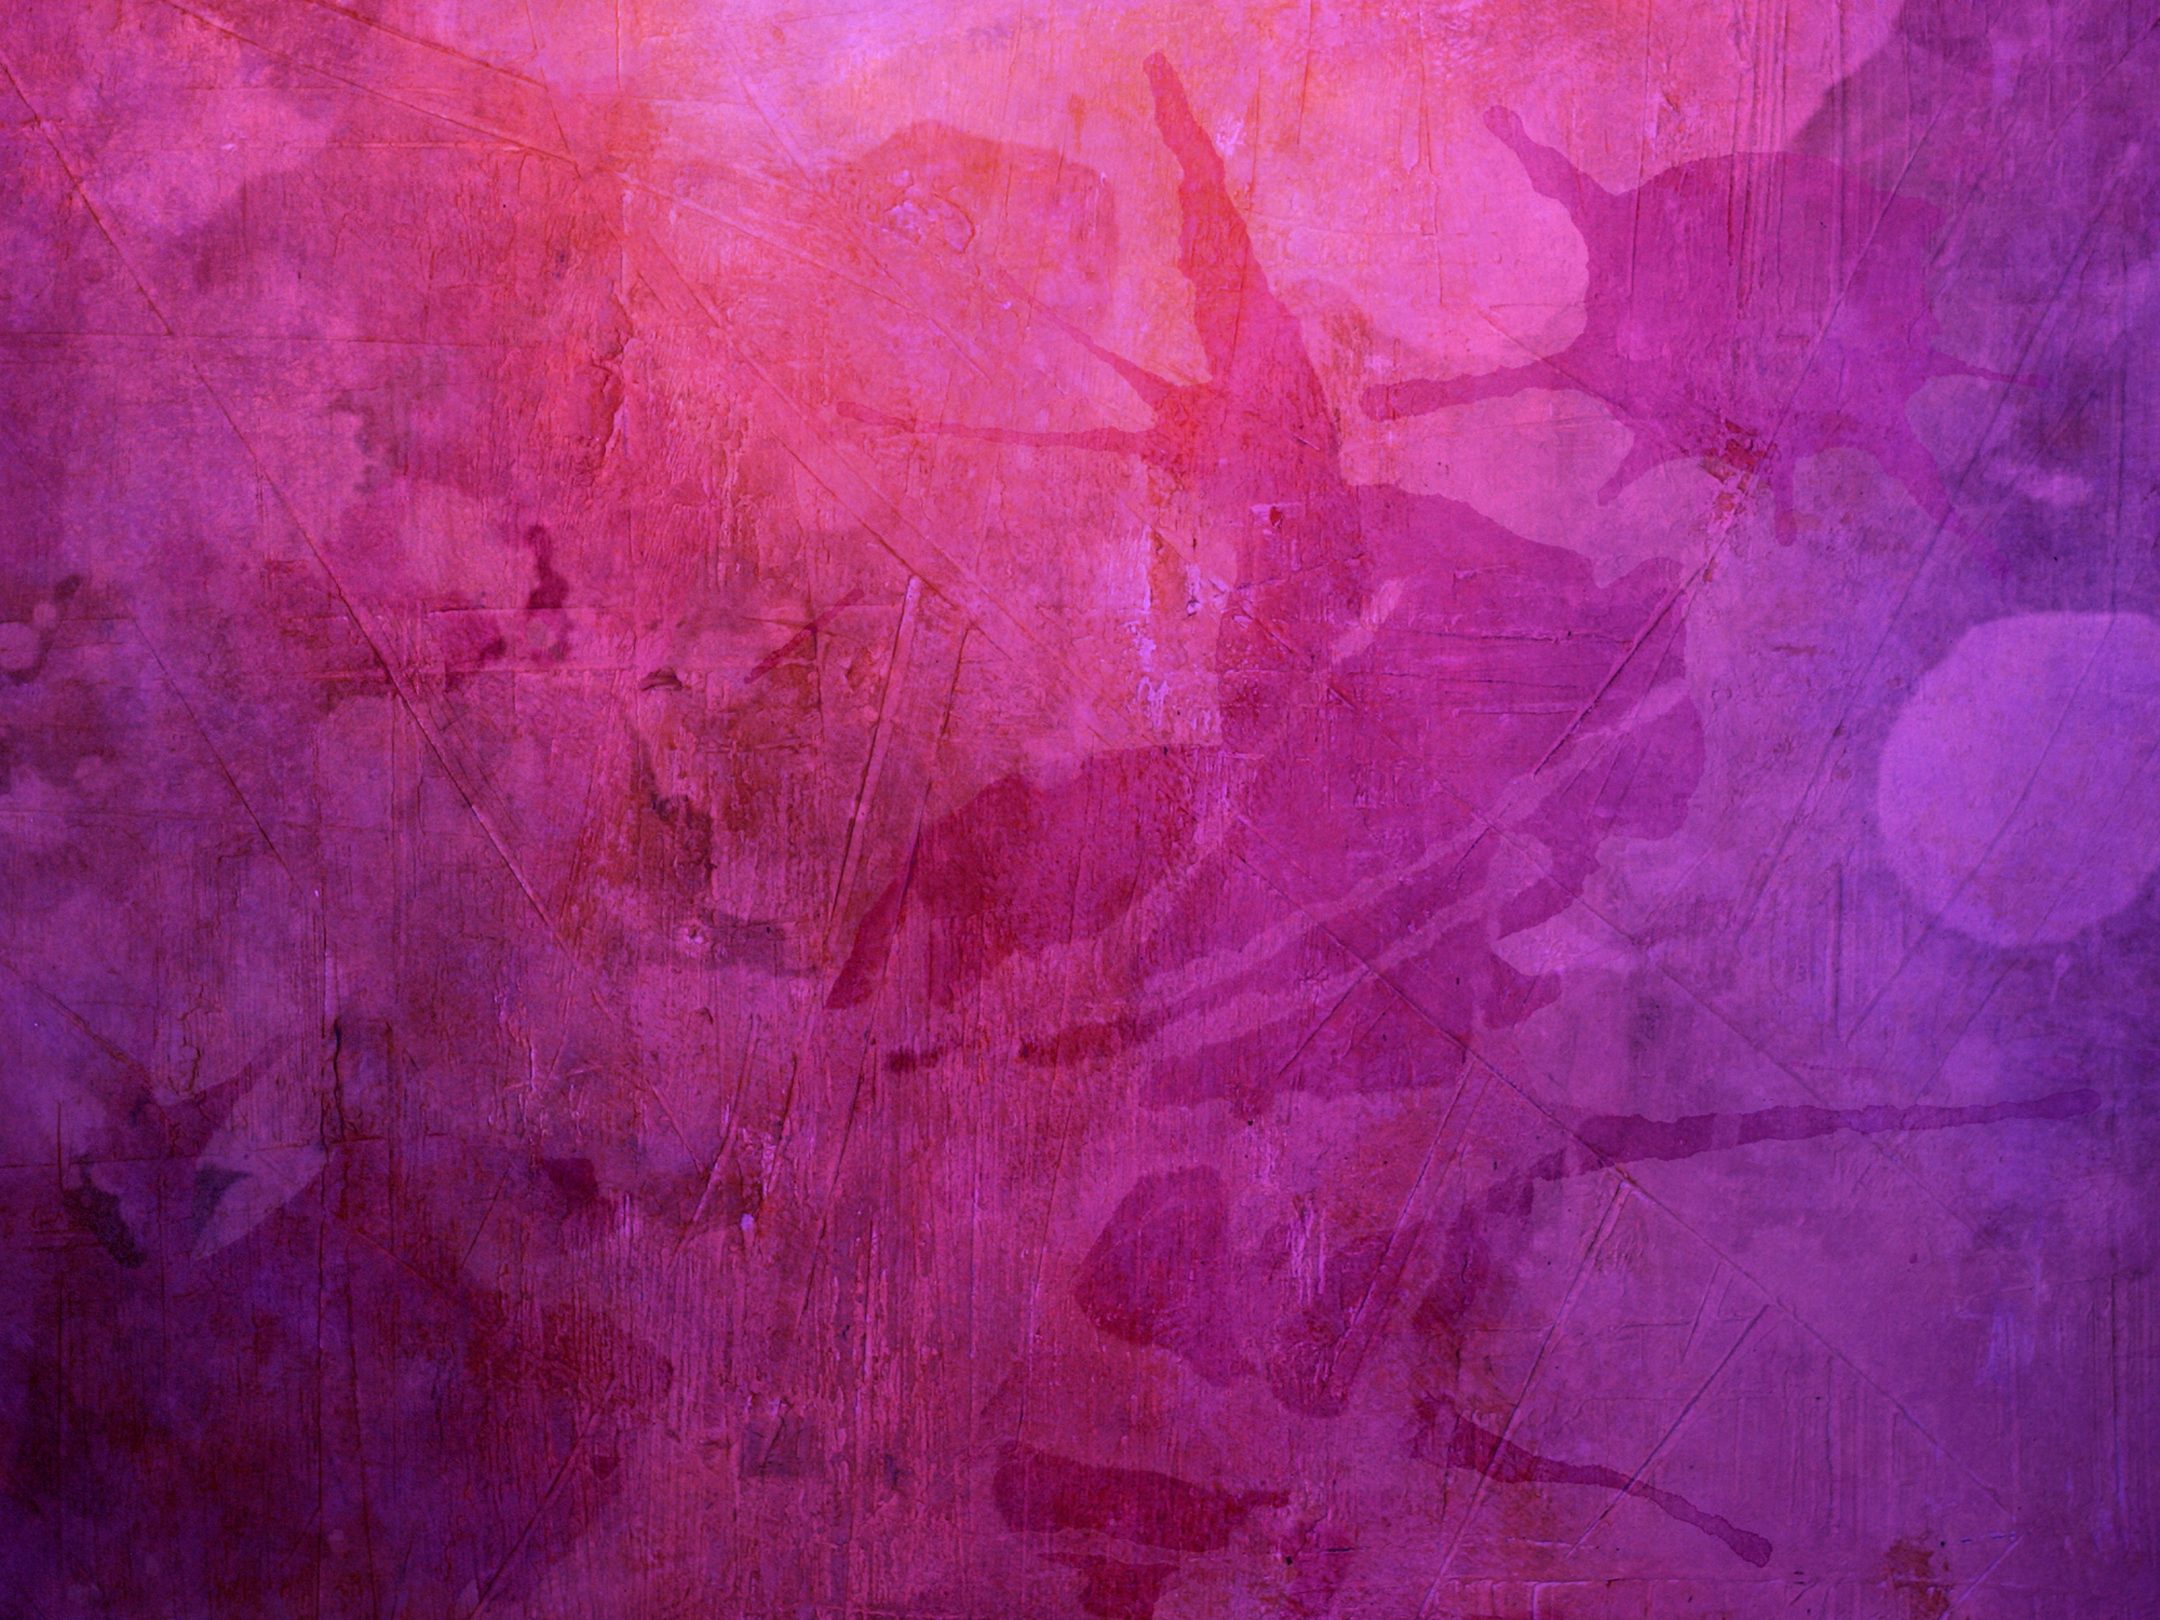 2160x1620 iPad wallpaper 4k Purple Watercolor Painting iPad Wallpaper 2160x1620 pixels resolution